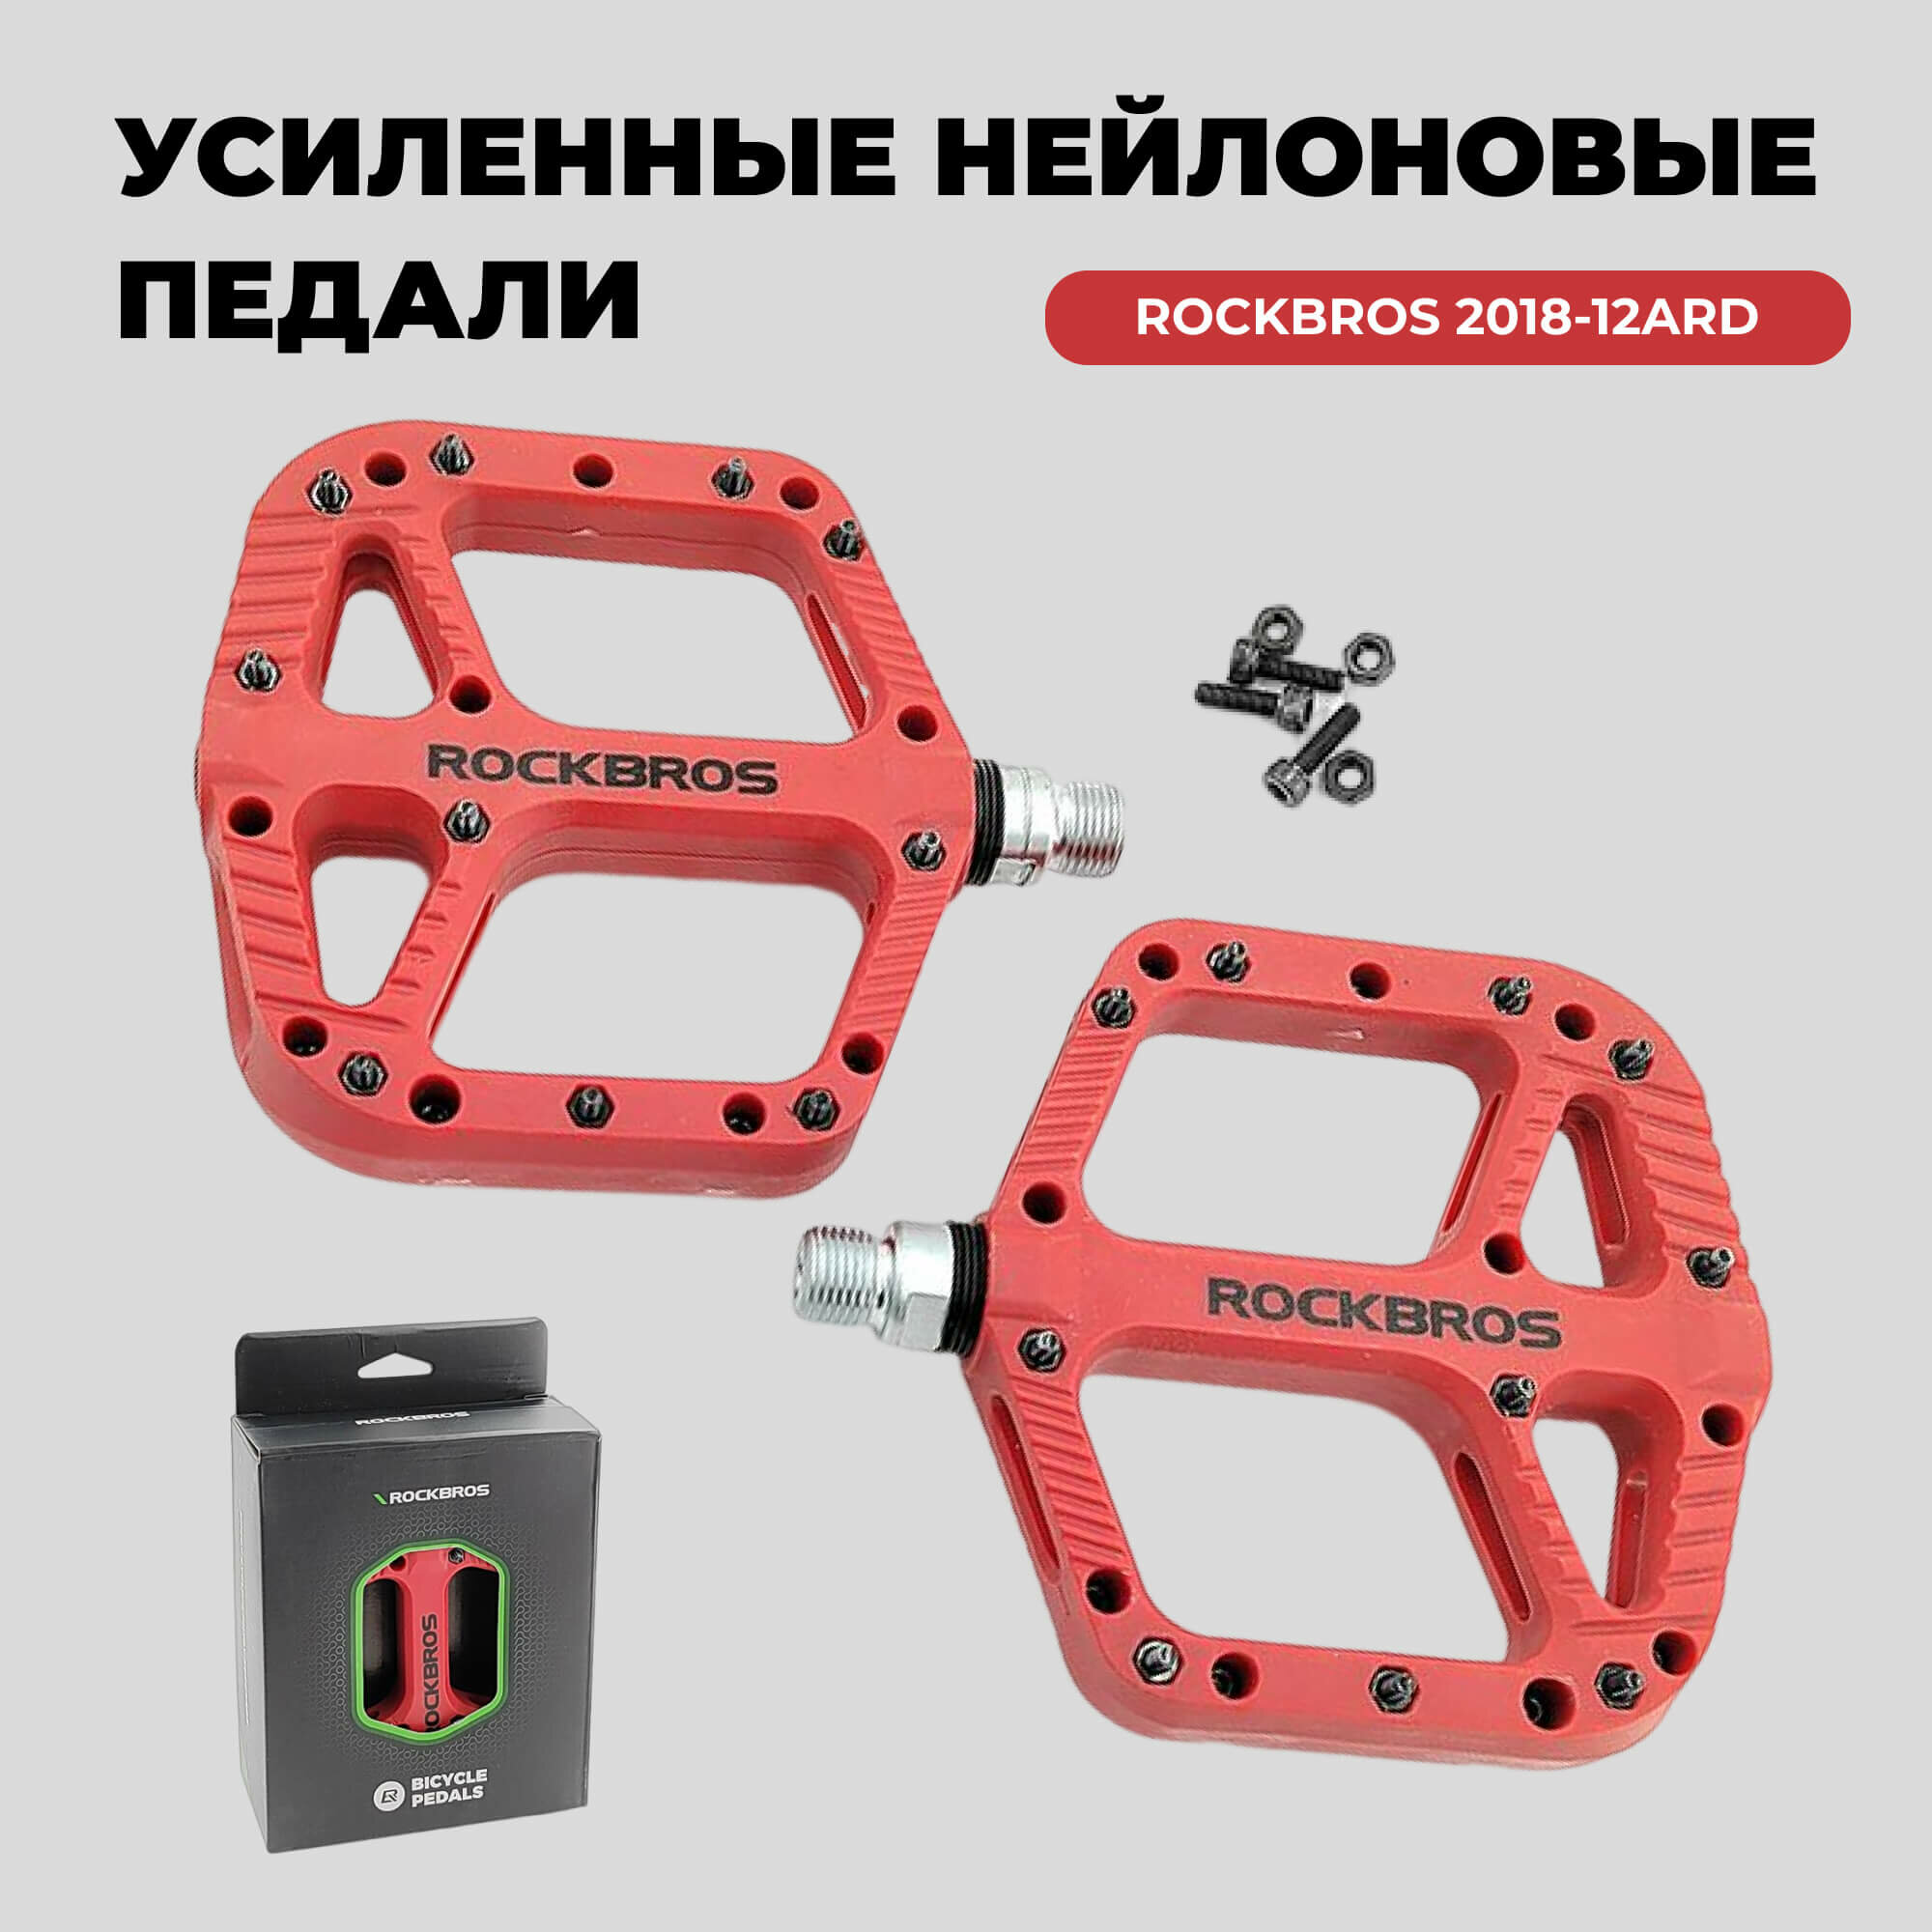 Педали для велосипеда Rockbros, модель 2018-12ARD Красные